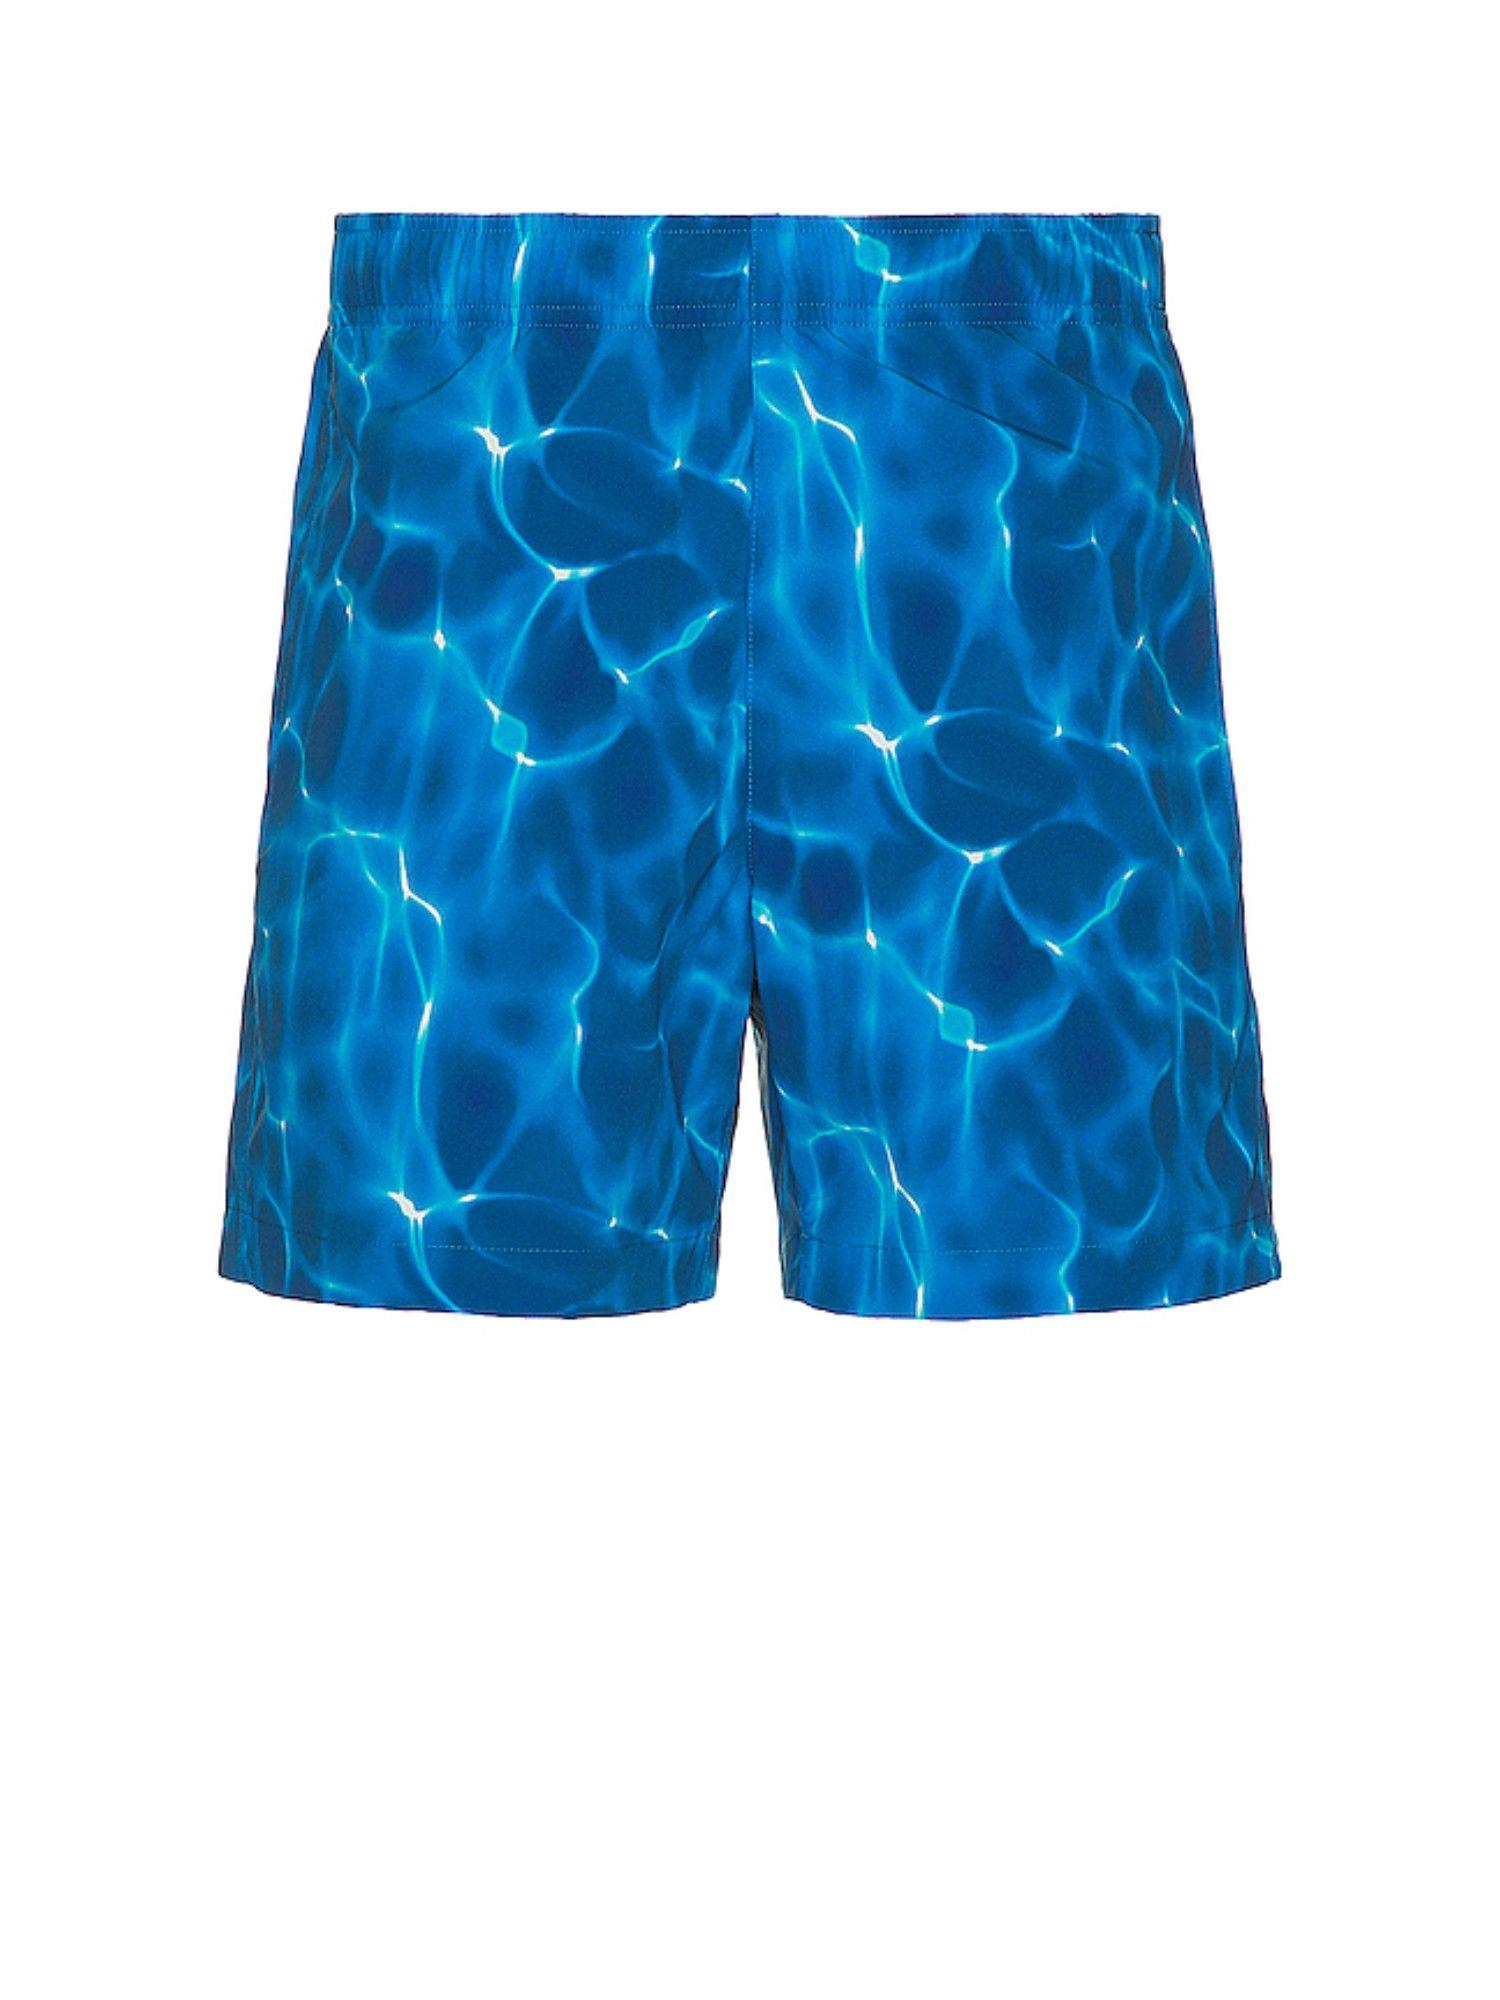 jace swim shorts